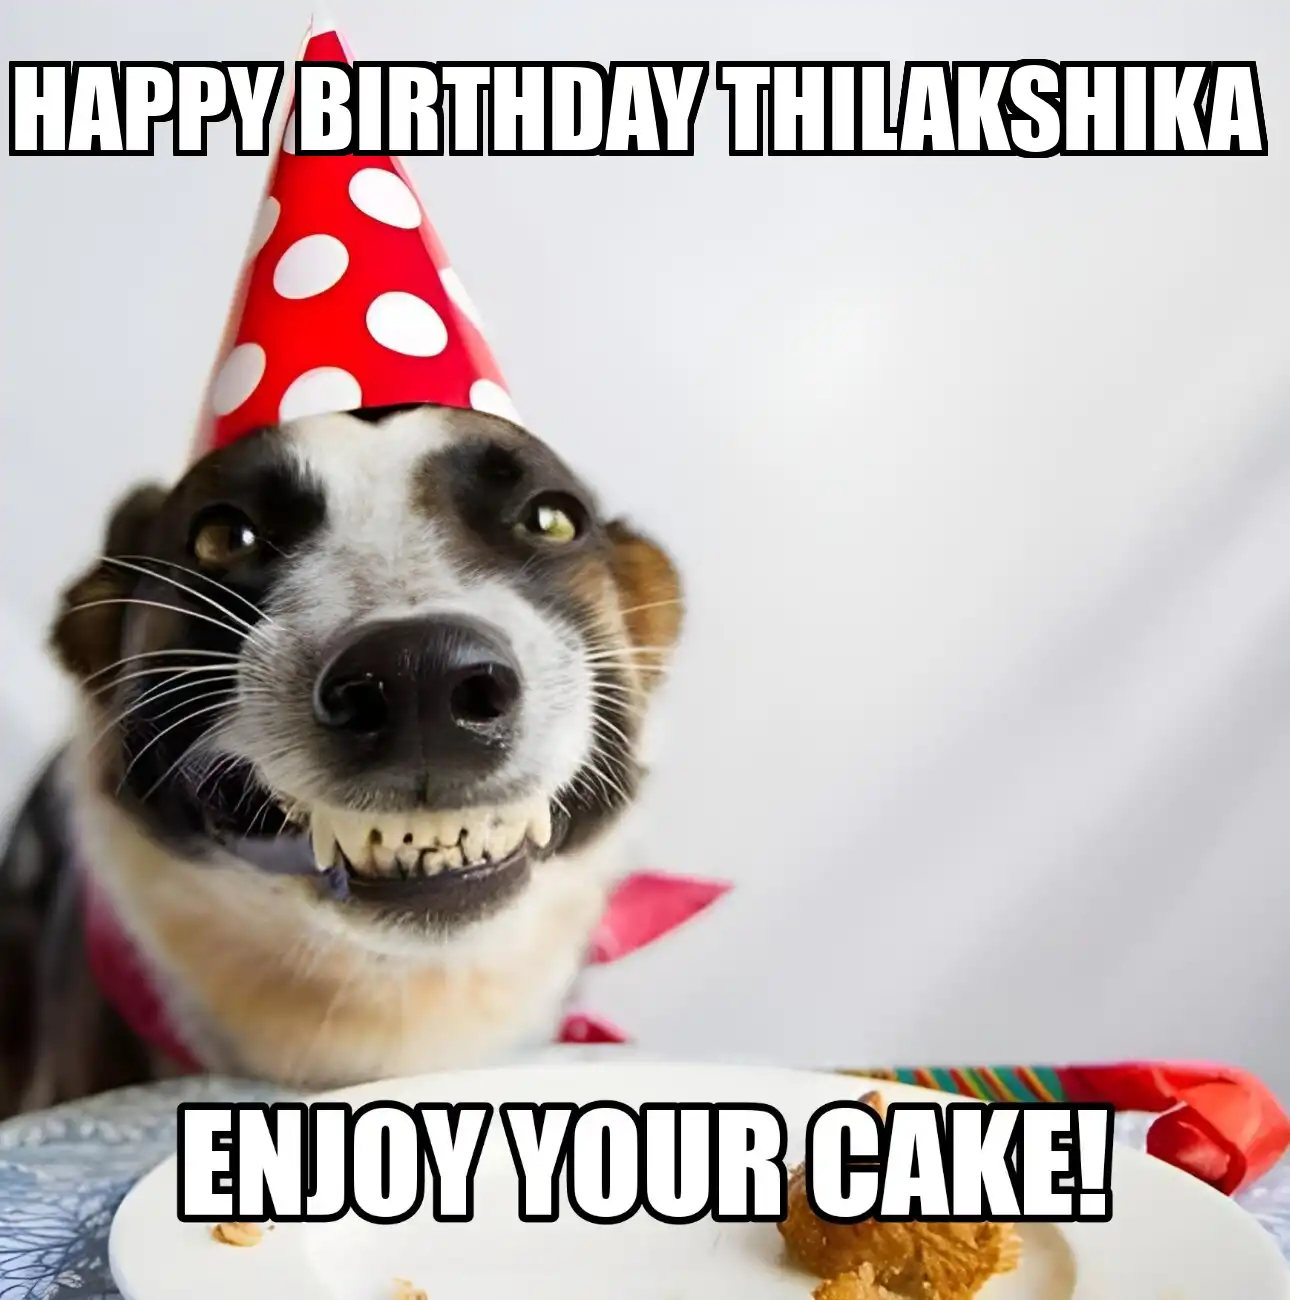 Happy Birthday Thilakshika Enjoy Your Cake Dog Meme